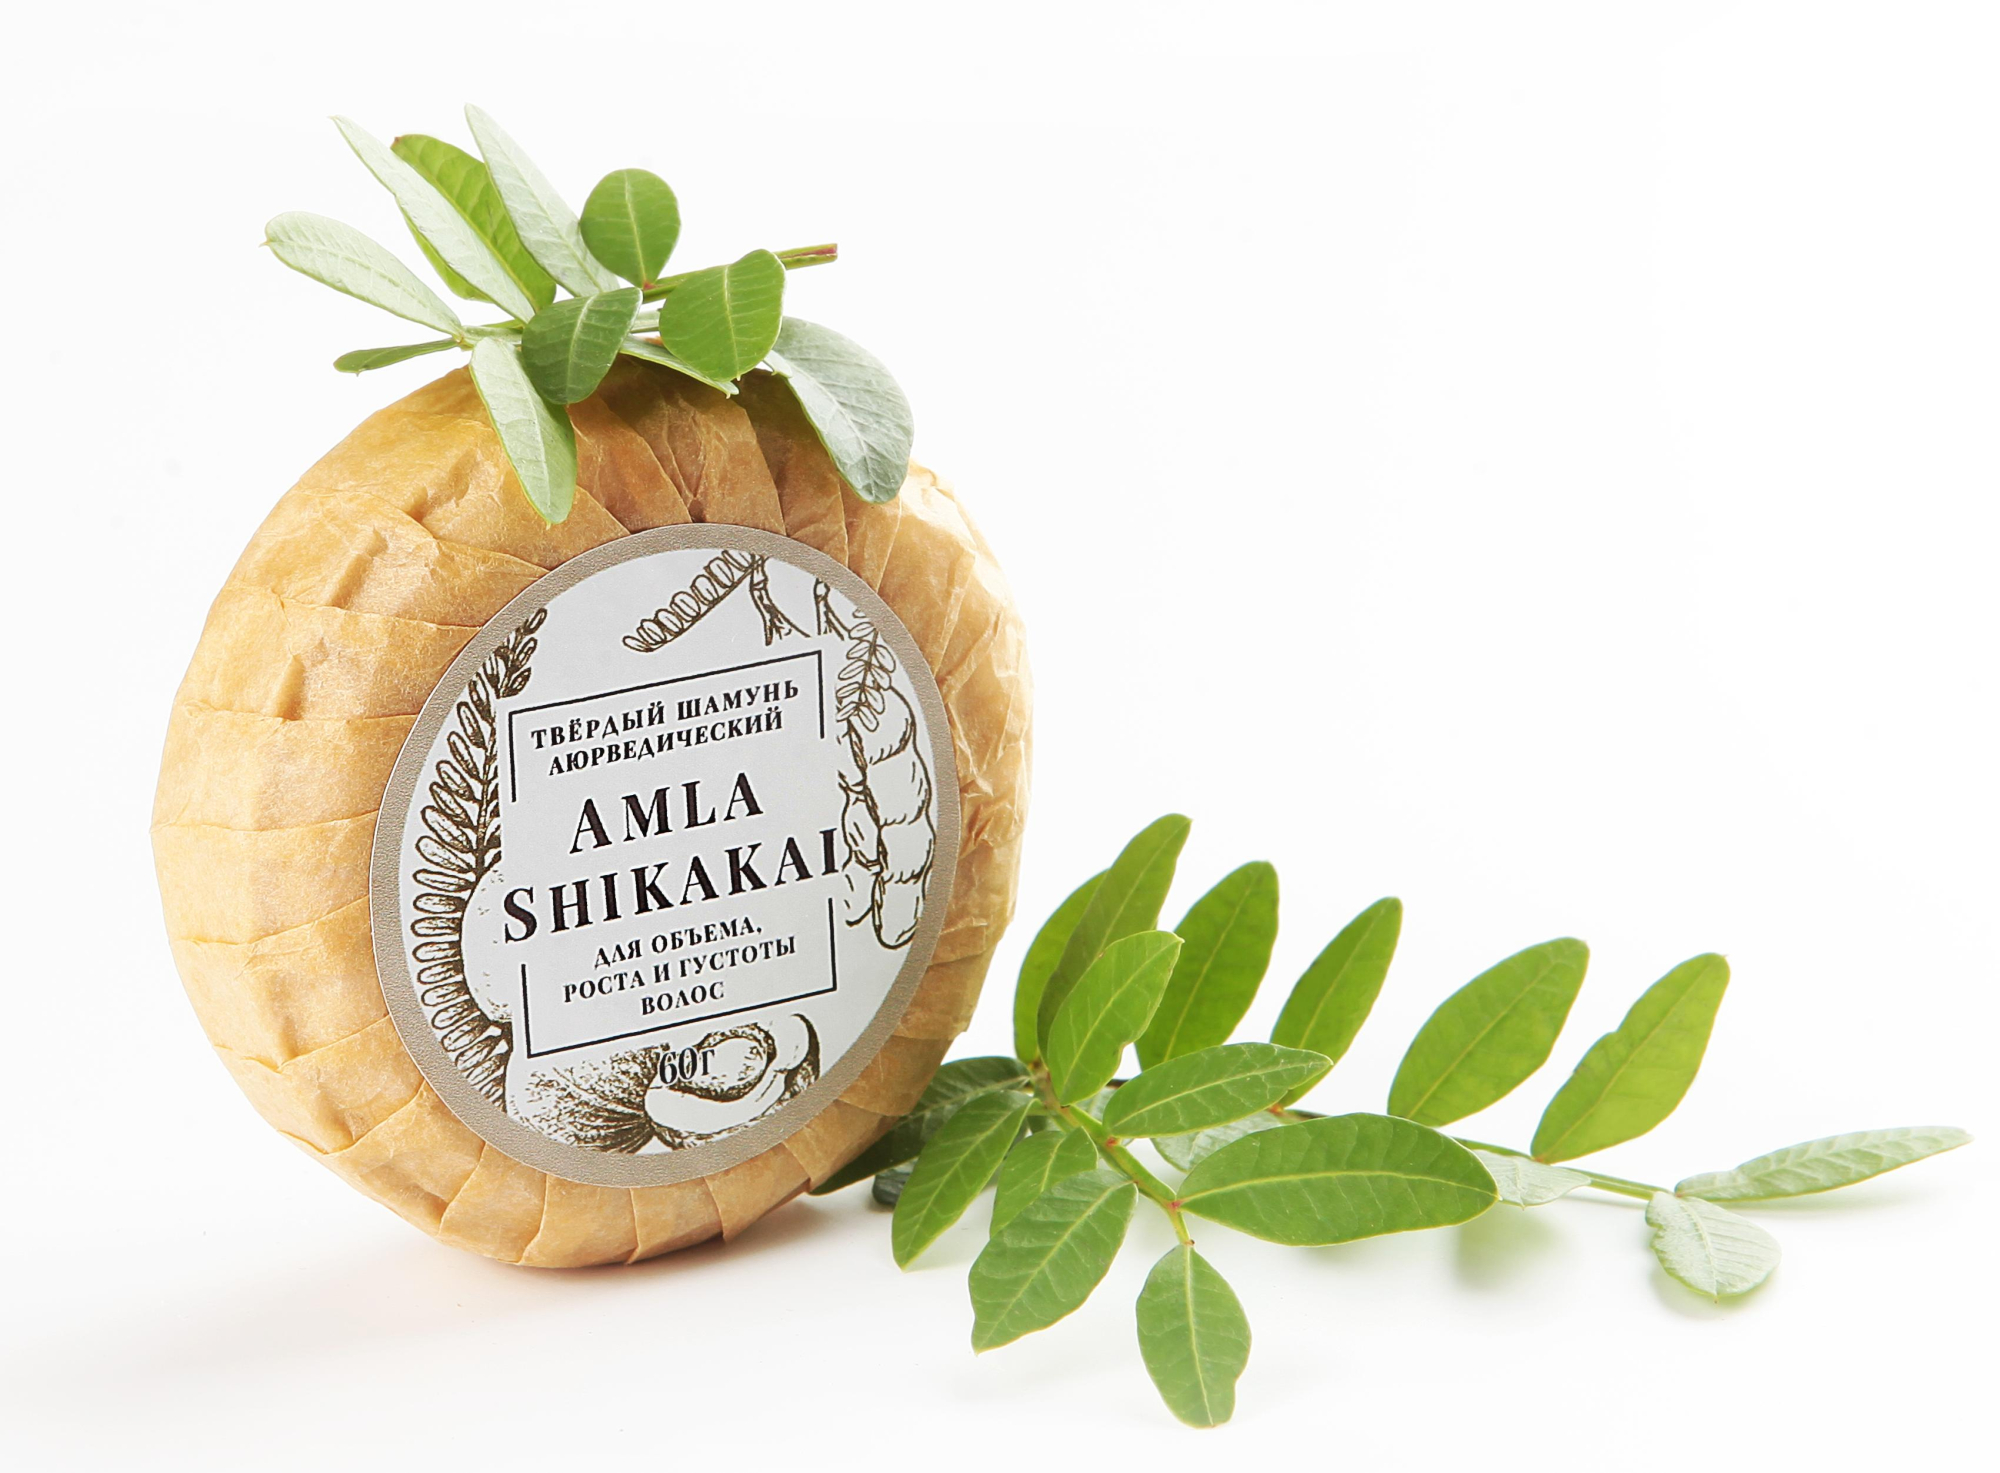 Твердый Шампунь аюрведический AMLA & SHIKAKAI купить в онлайн экомаркете